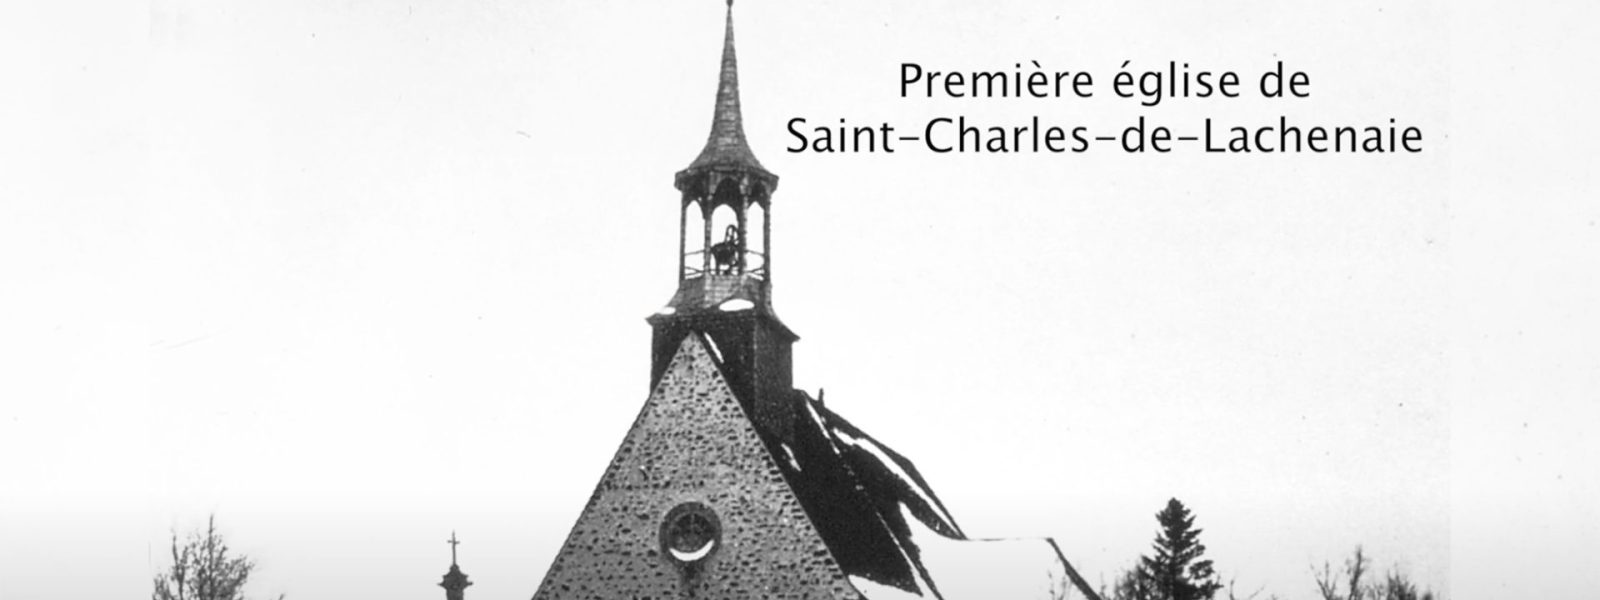 Première église de Saint-Charles-de-Lachenaie